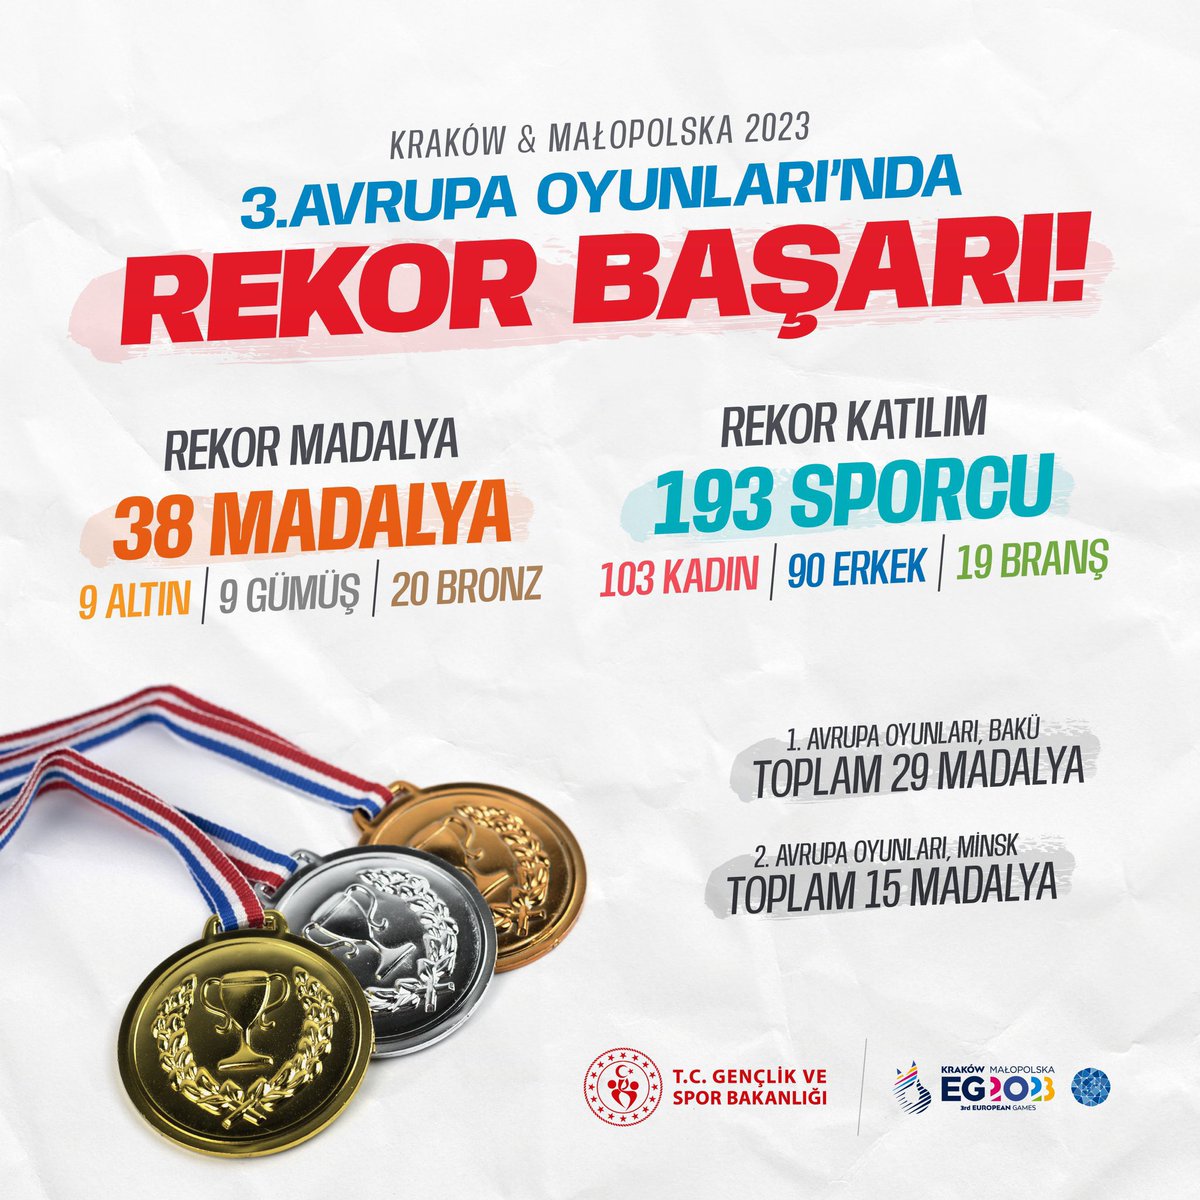 @RTErdogan 9 altın 🥇
9 gümüş 🥈
20 bronz 🥉

3. Avrupa Oyunları’nda rekor sayıda madalya kazanan millî sporcularımızla gurur duyduk 🇹🇷🏅

#EuropeanGames2023 #EG2023